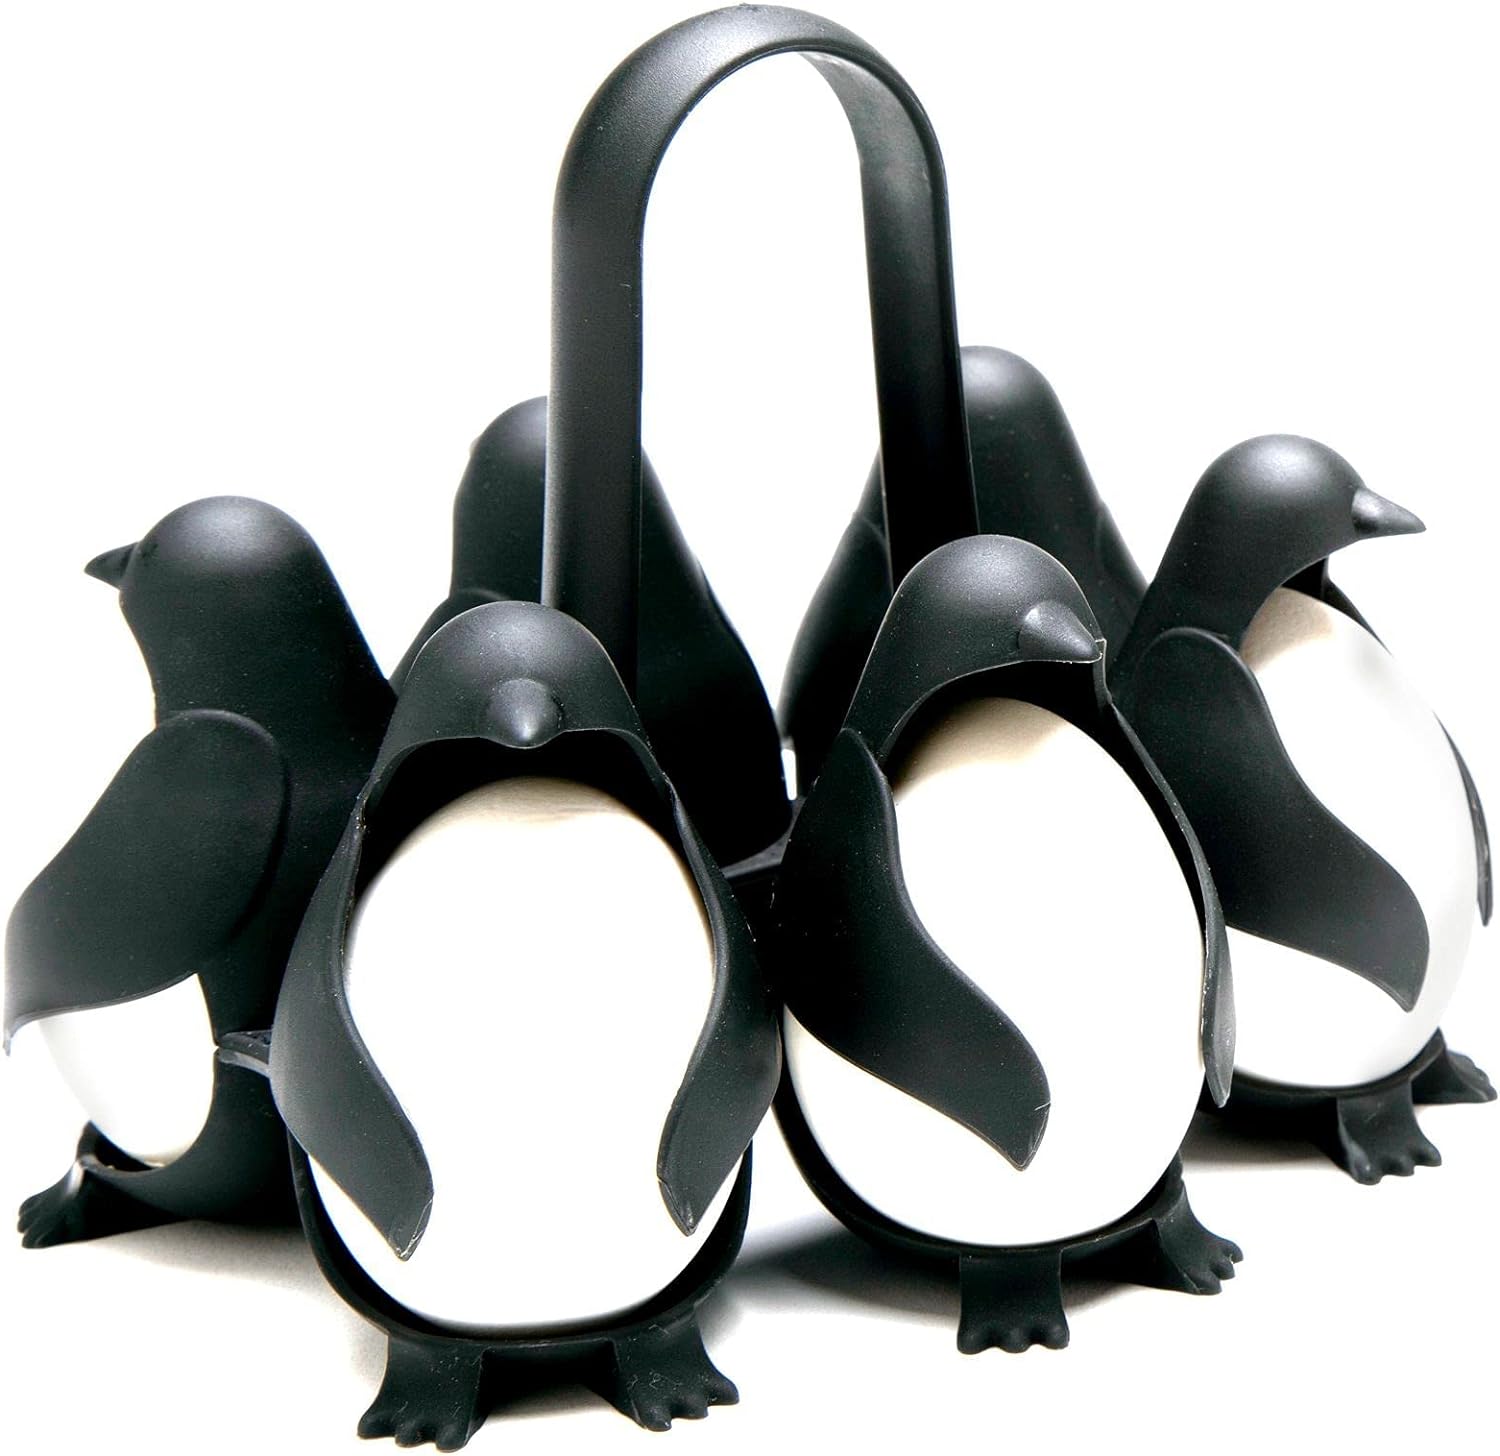 Penguin-shaped egg boiler for hard or soft eggs, holds 6 eggs